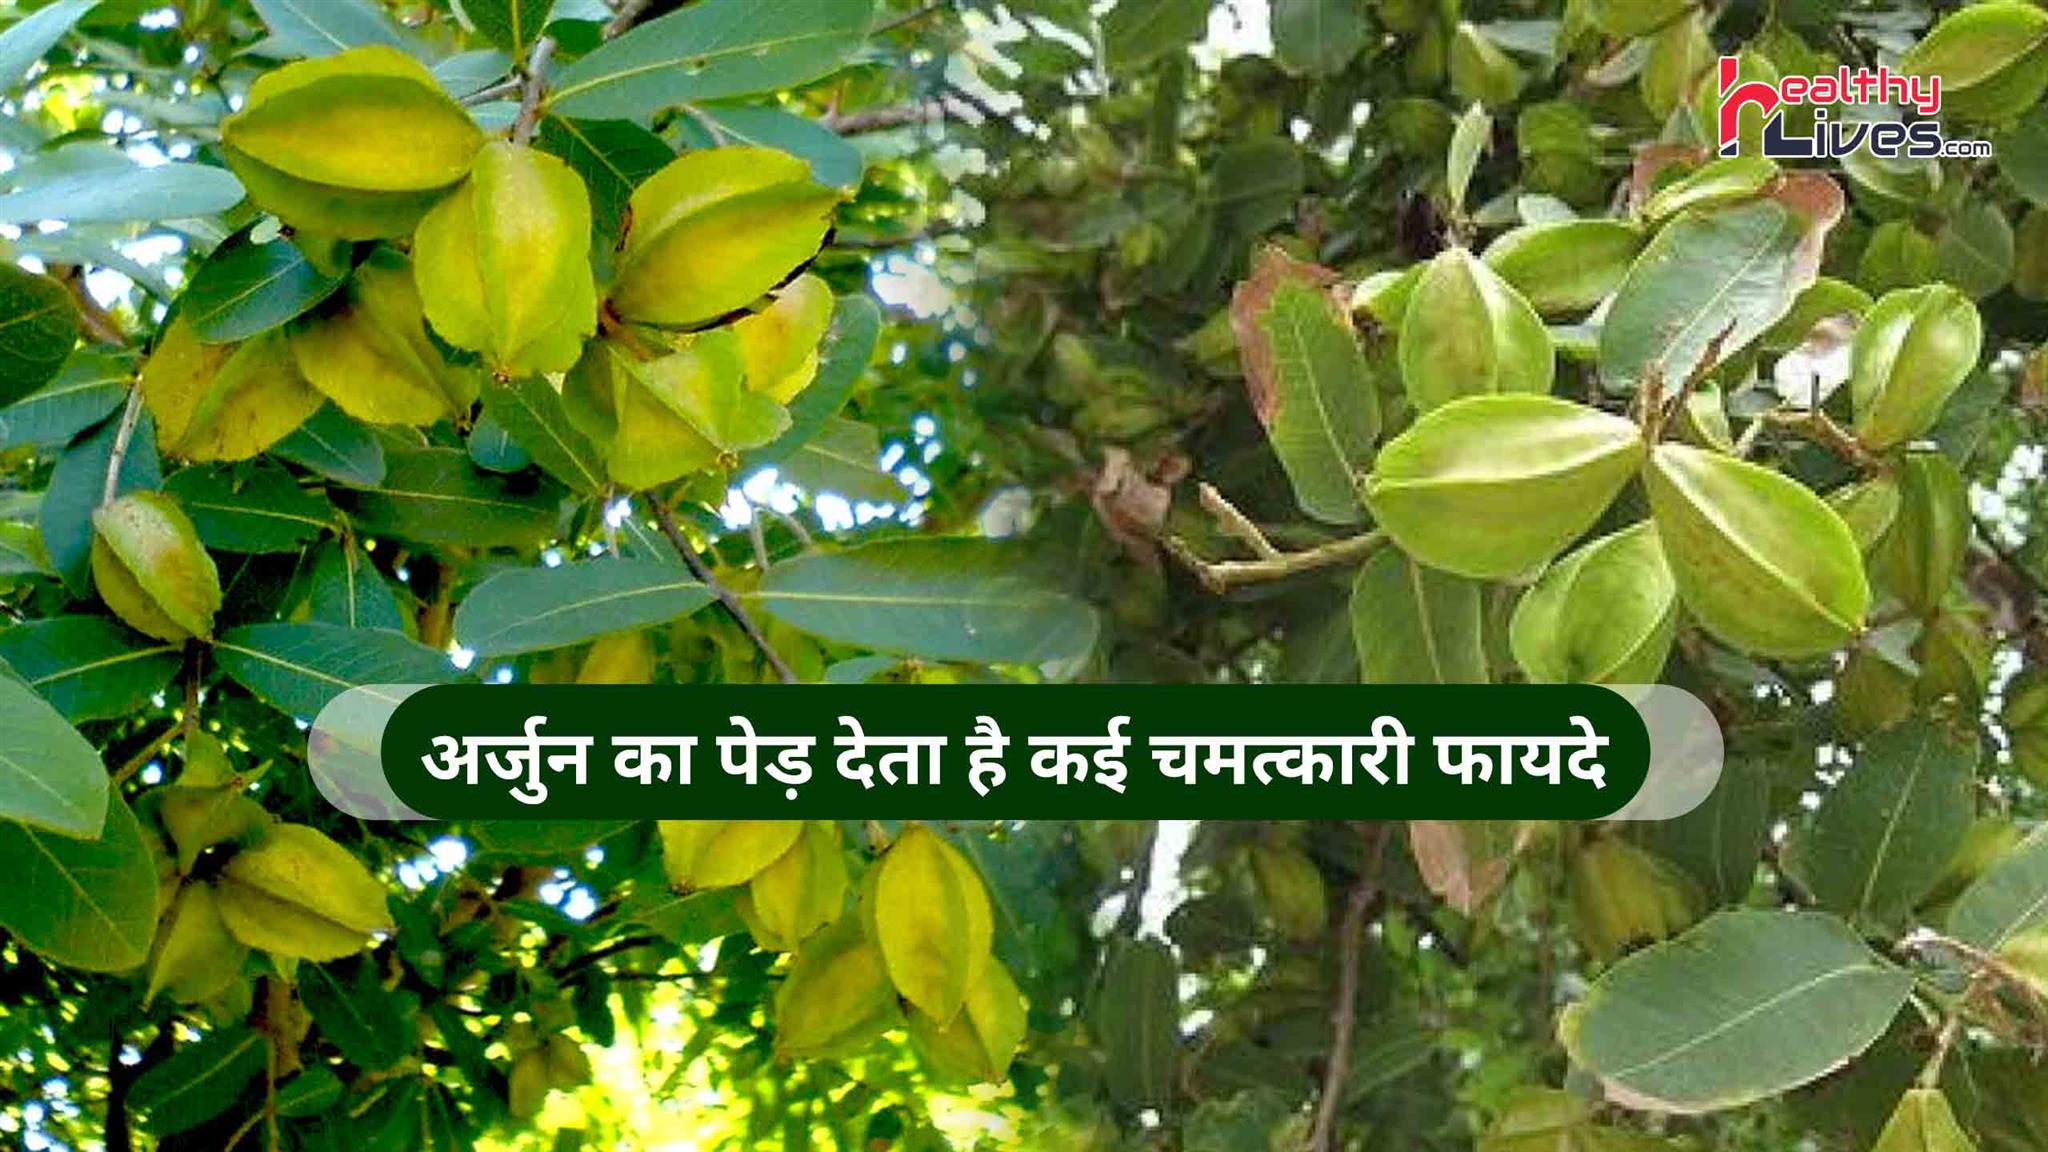 Arjun Tree Benefits: हृदय रोग के लिए रामबाण औषधि है अर्जुन का पेड़, जाने इसके अन्य लाभ